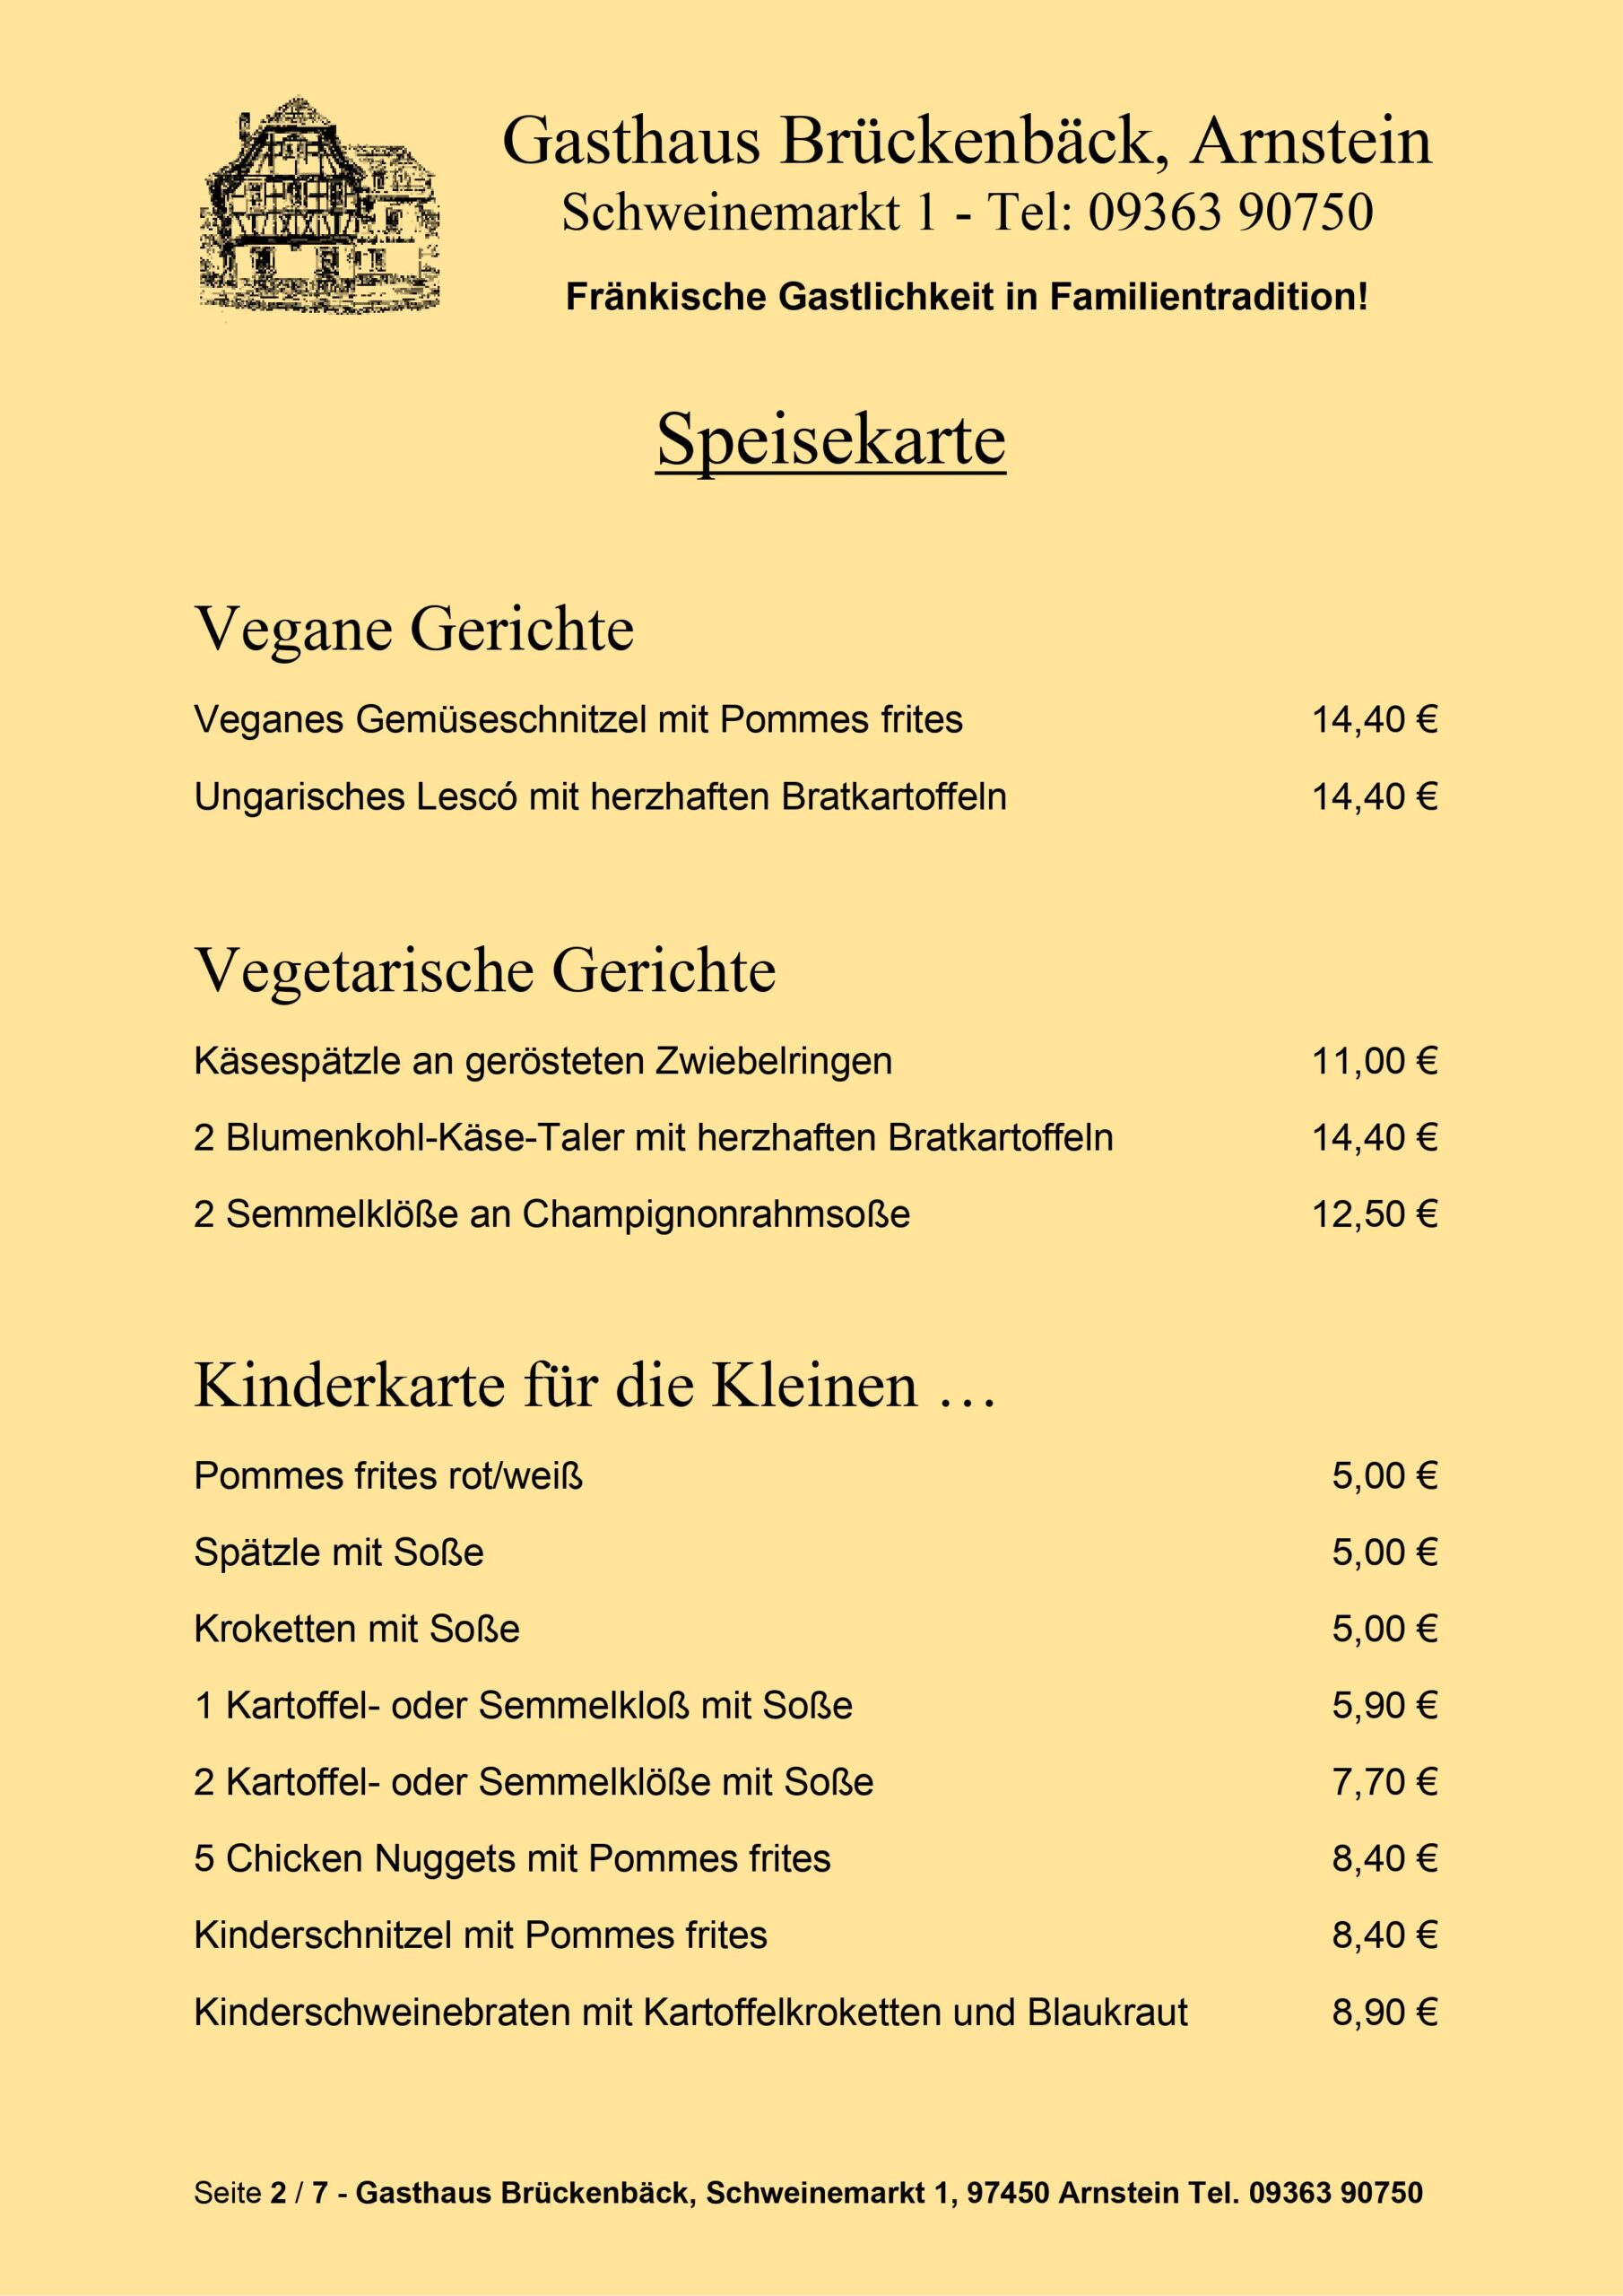 Gasthaus Brückenbäck - Speisekarte Seite 2/7